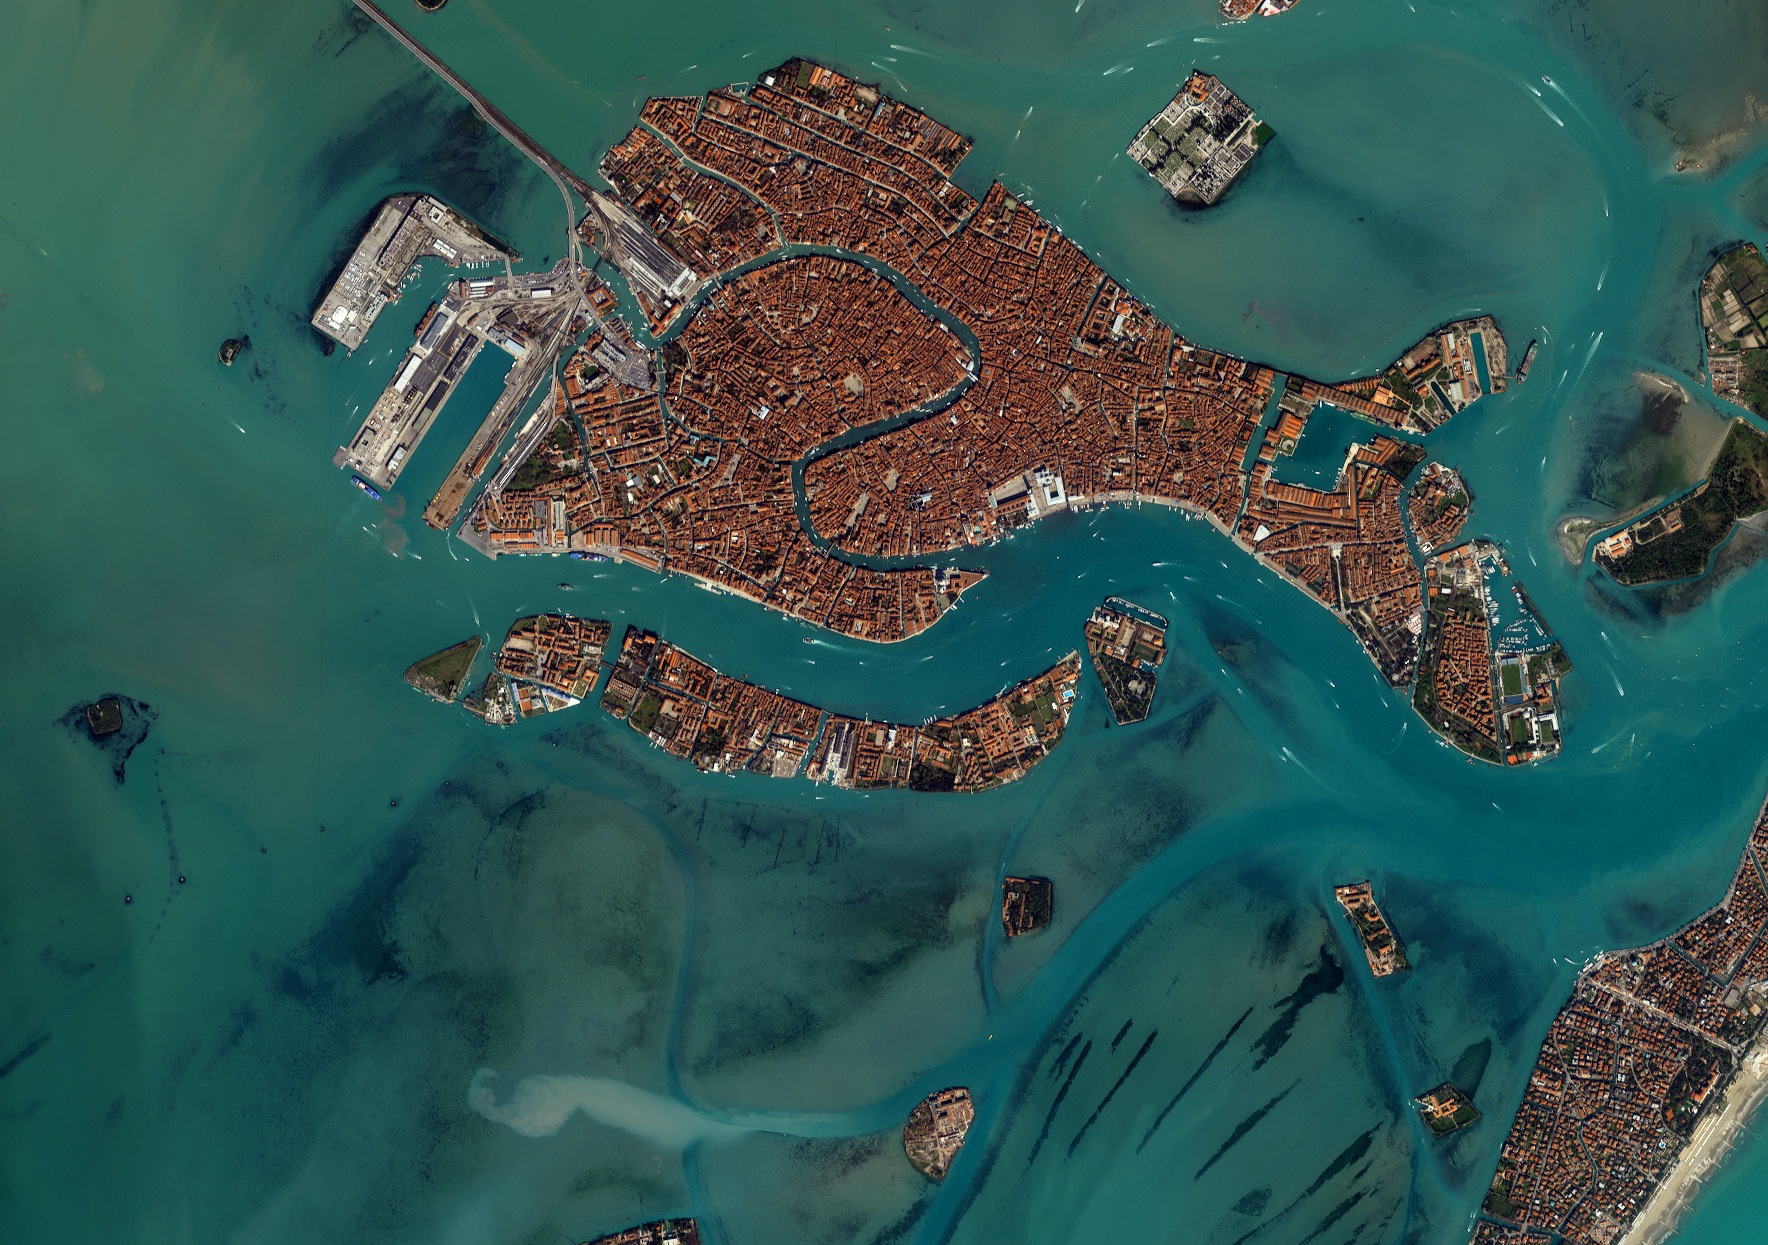 фото венеция с высоты птичьего полета